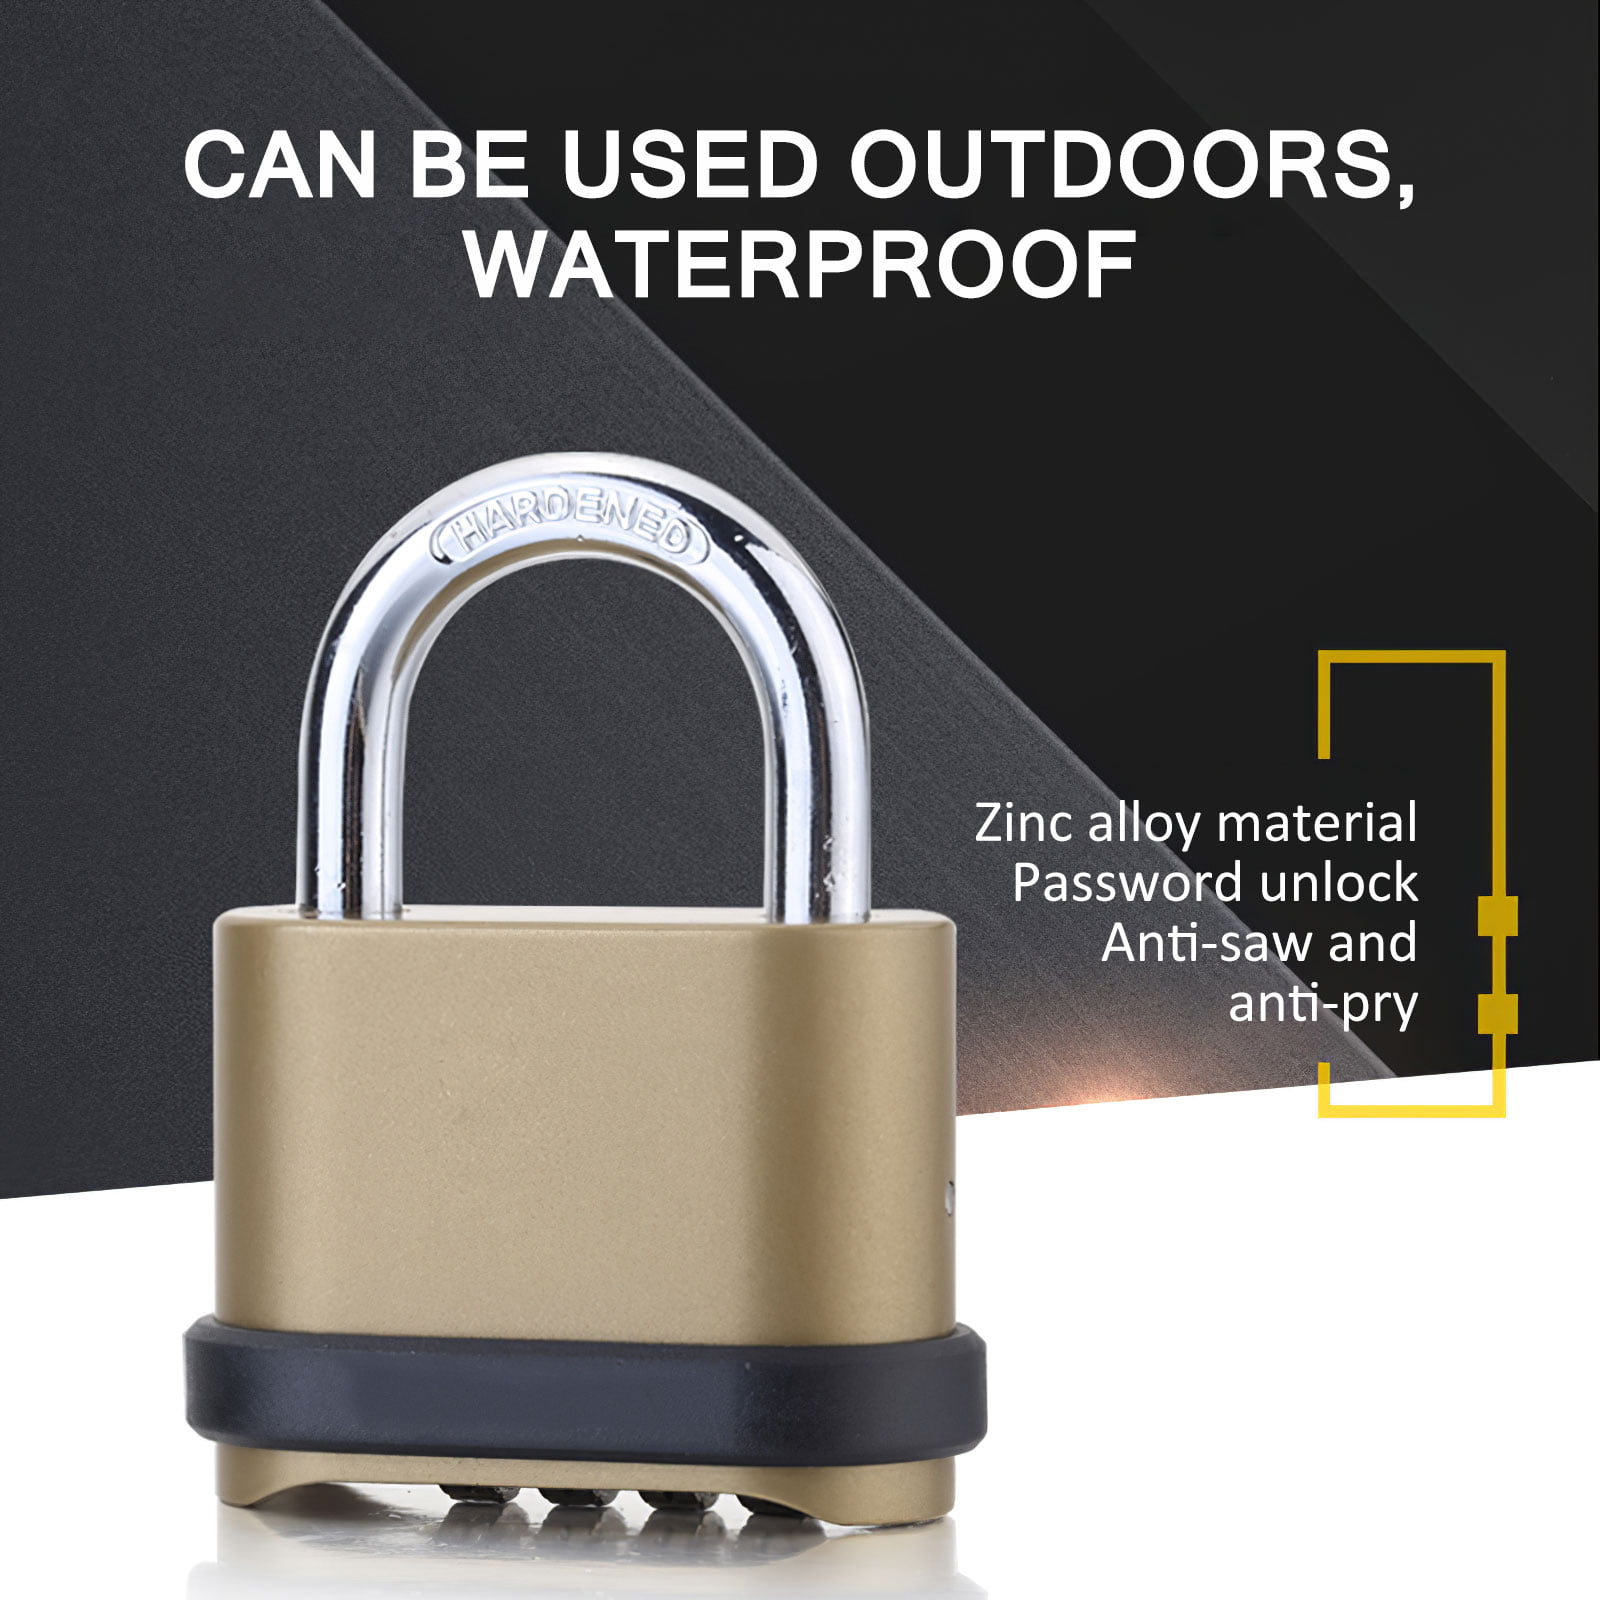 Password Padlock 4 Digit 10000Combination Zinc Alloy Lock Security Waterproof 